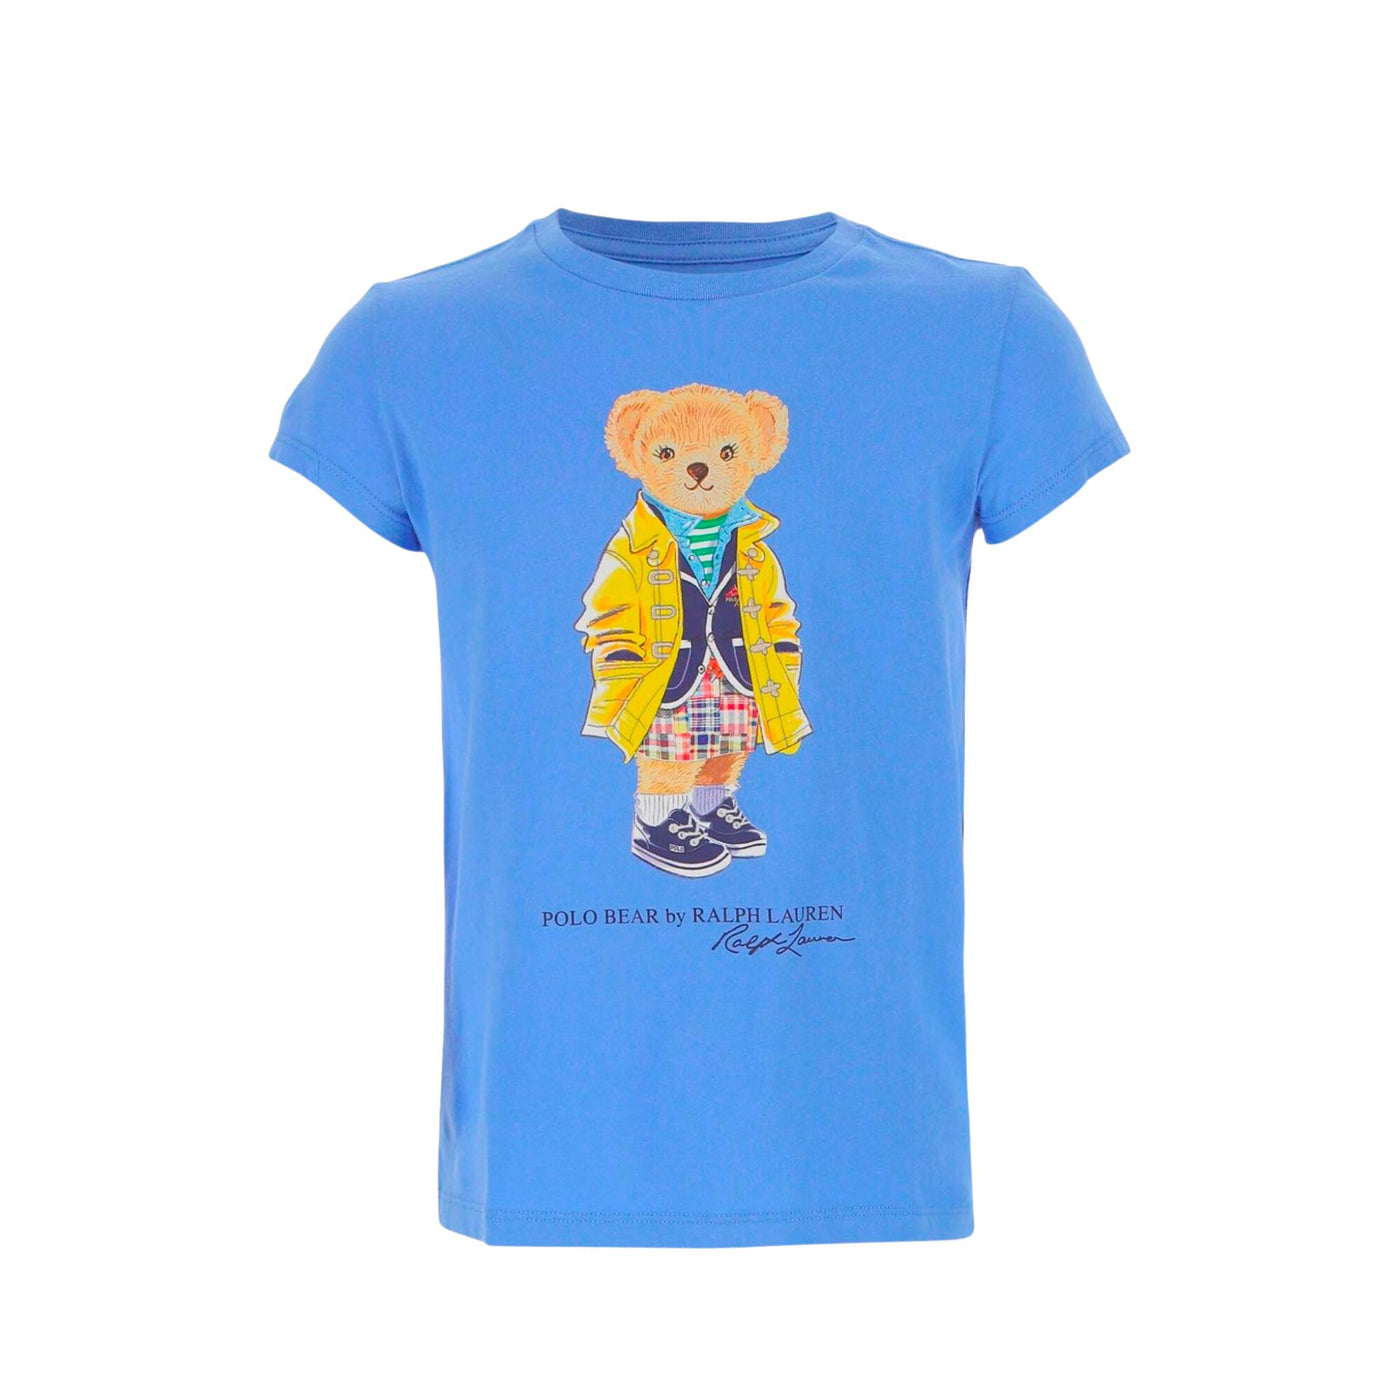 Little girl T-shirt with teddy bear